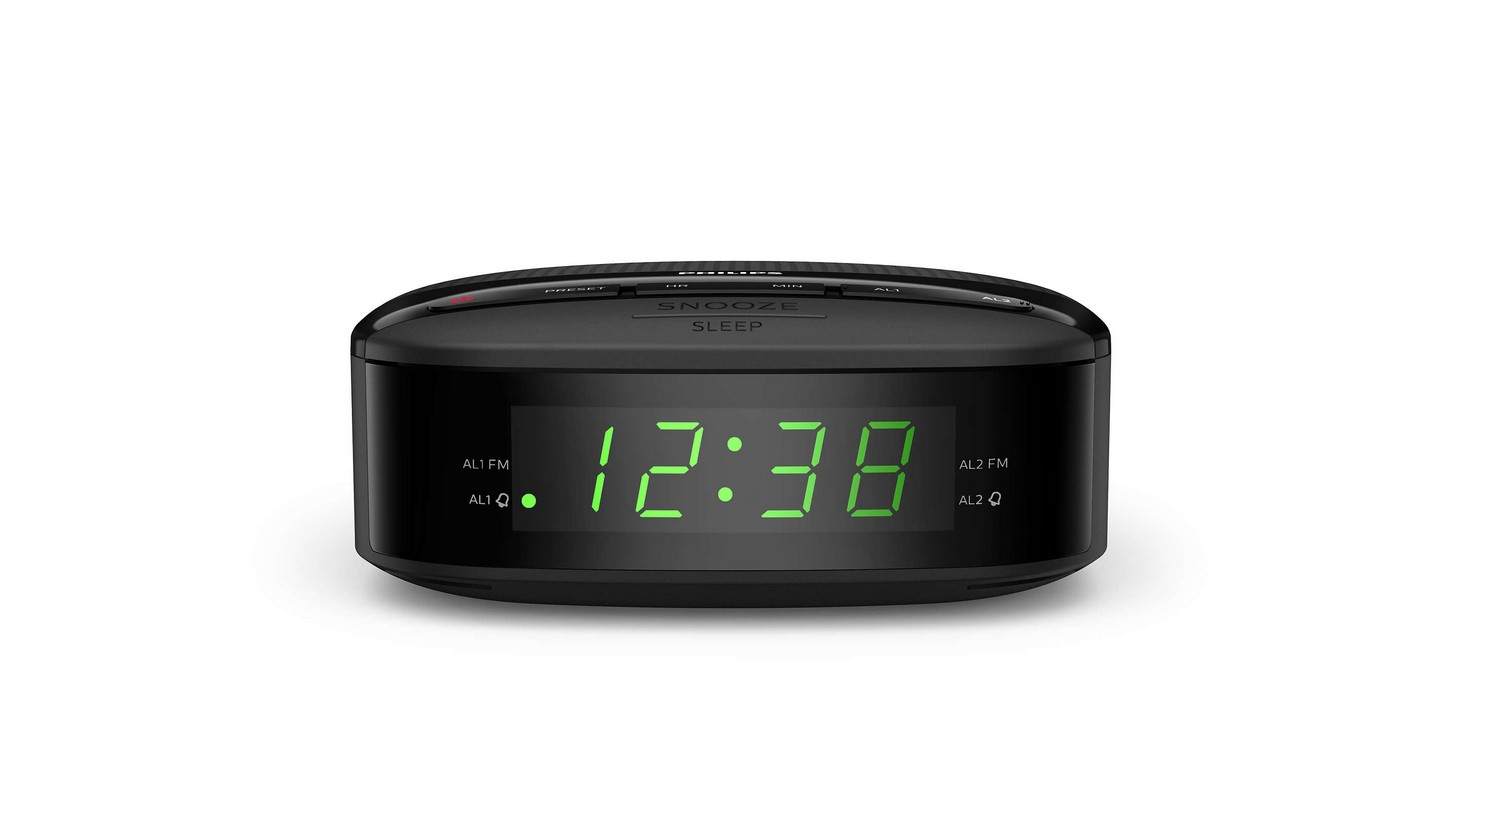 Radio Reloj Despertador Philips AJ3115/12 - Resettec